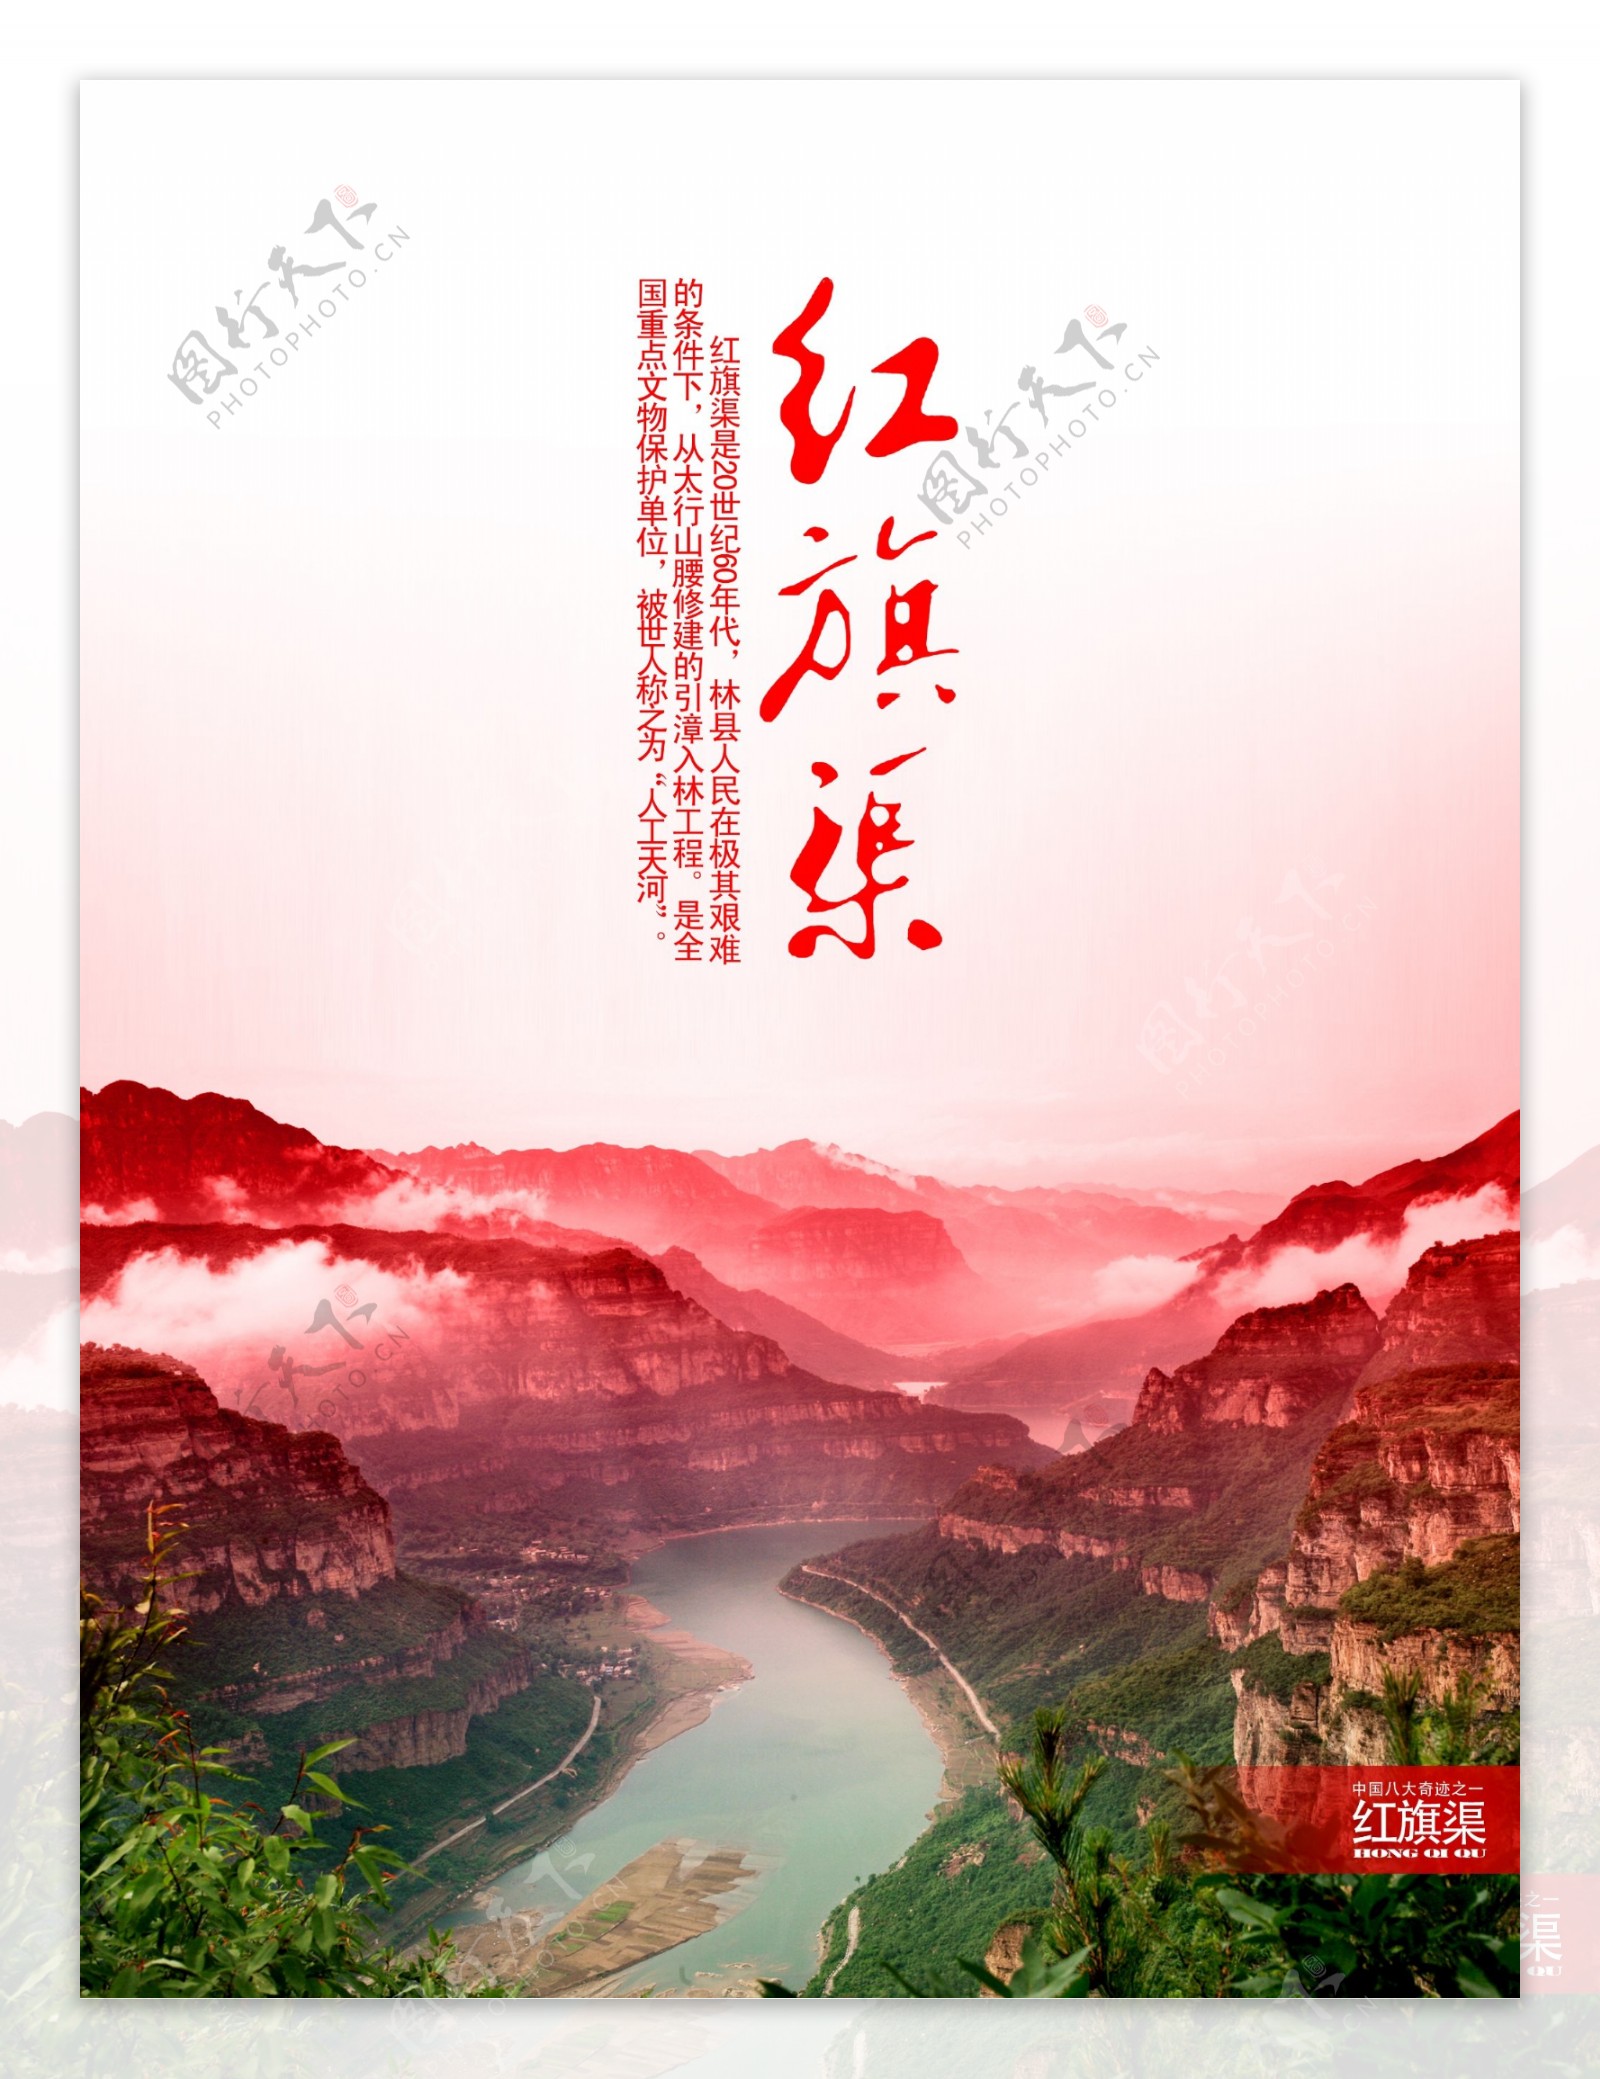 中国八大奇迹红旗渠图片